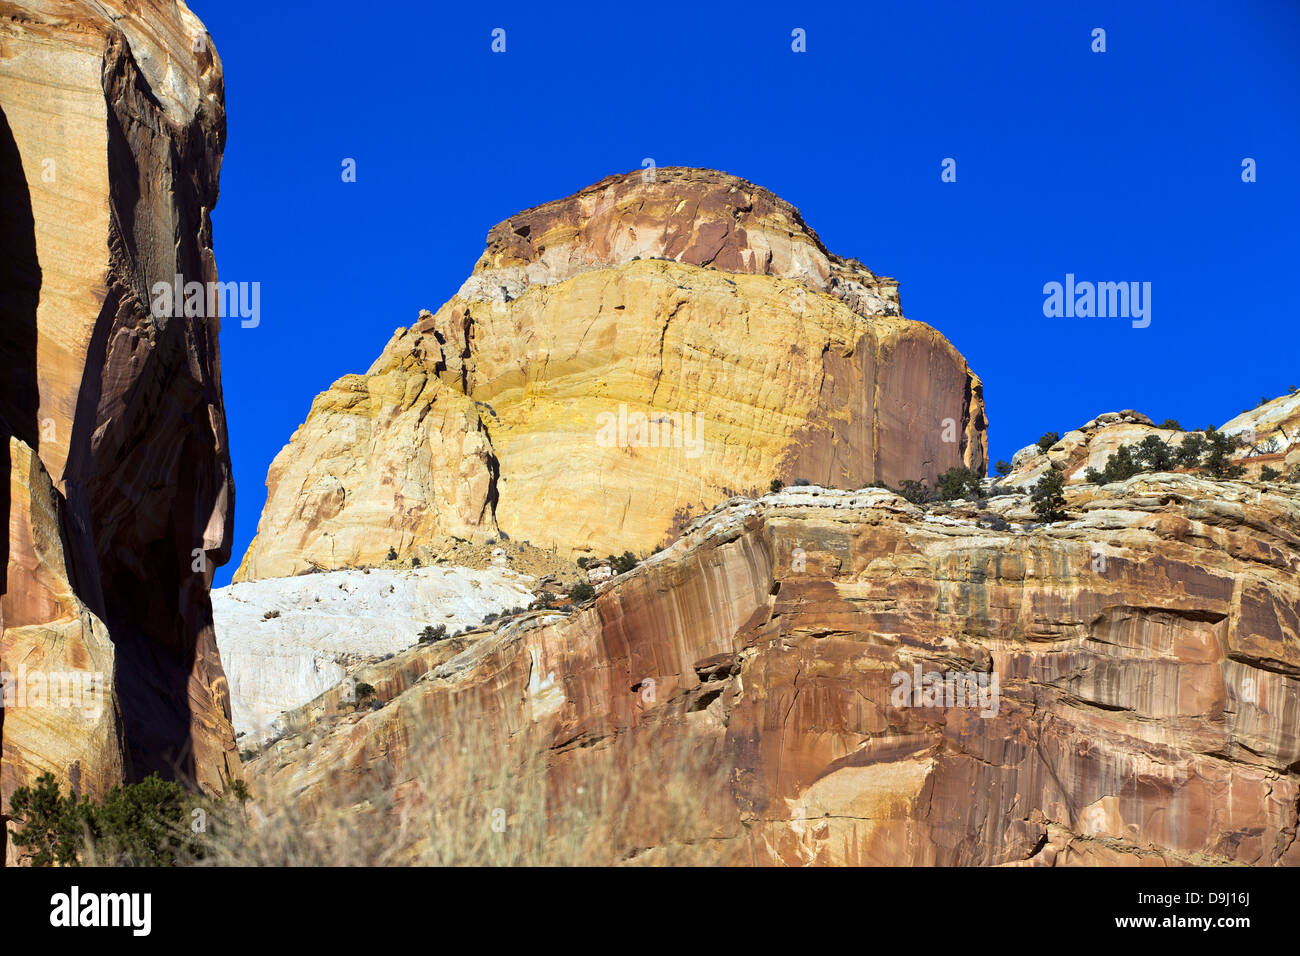 Die goldenen Thron Sandstein Felsformation vom Capitol Gorge, Capitol Reef National Park, Utah, Vereinigte Staaten von Amerika Stockfoto